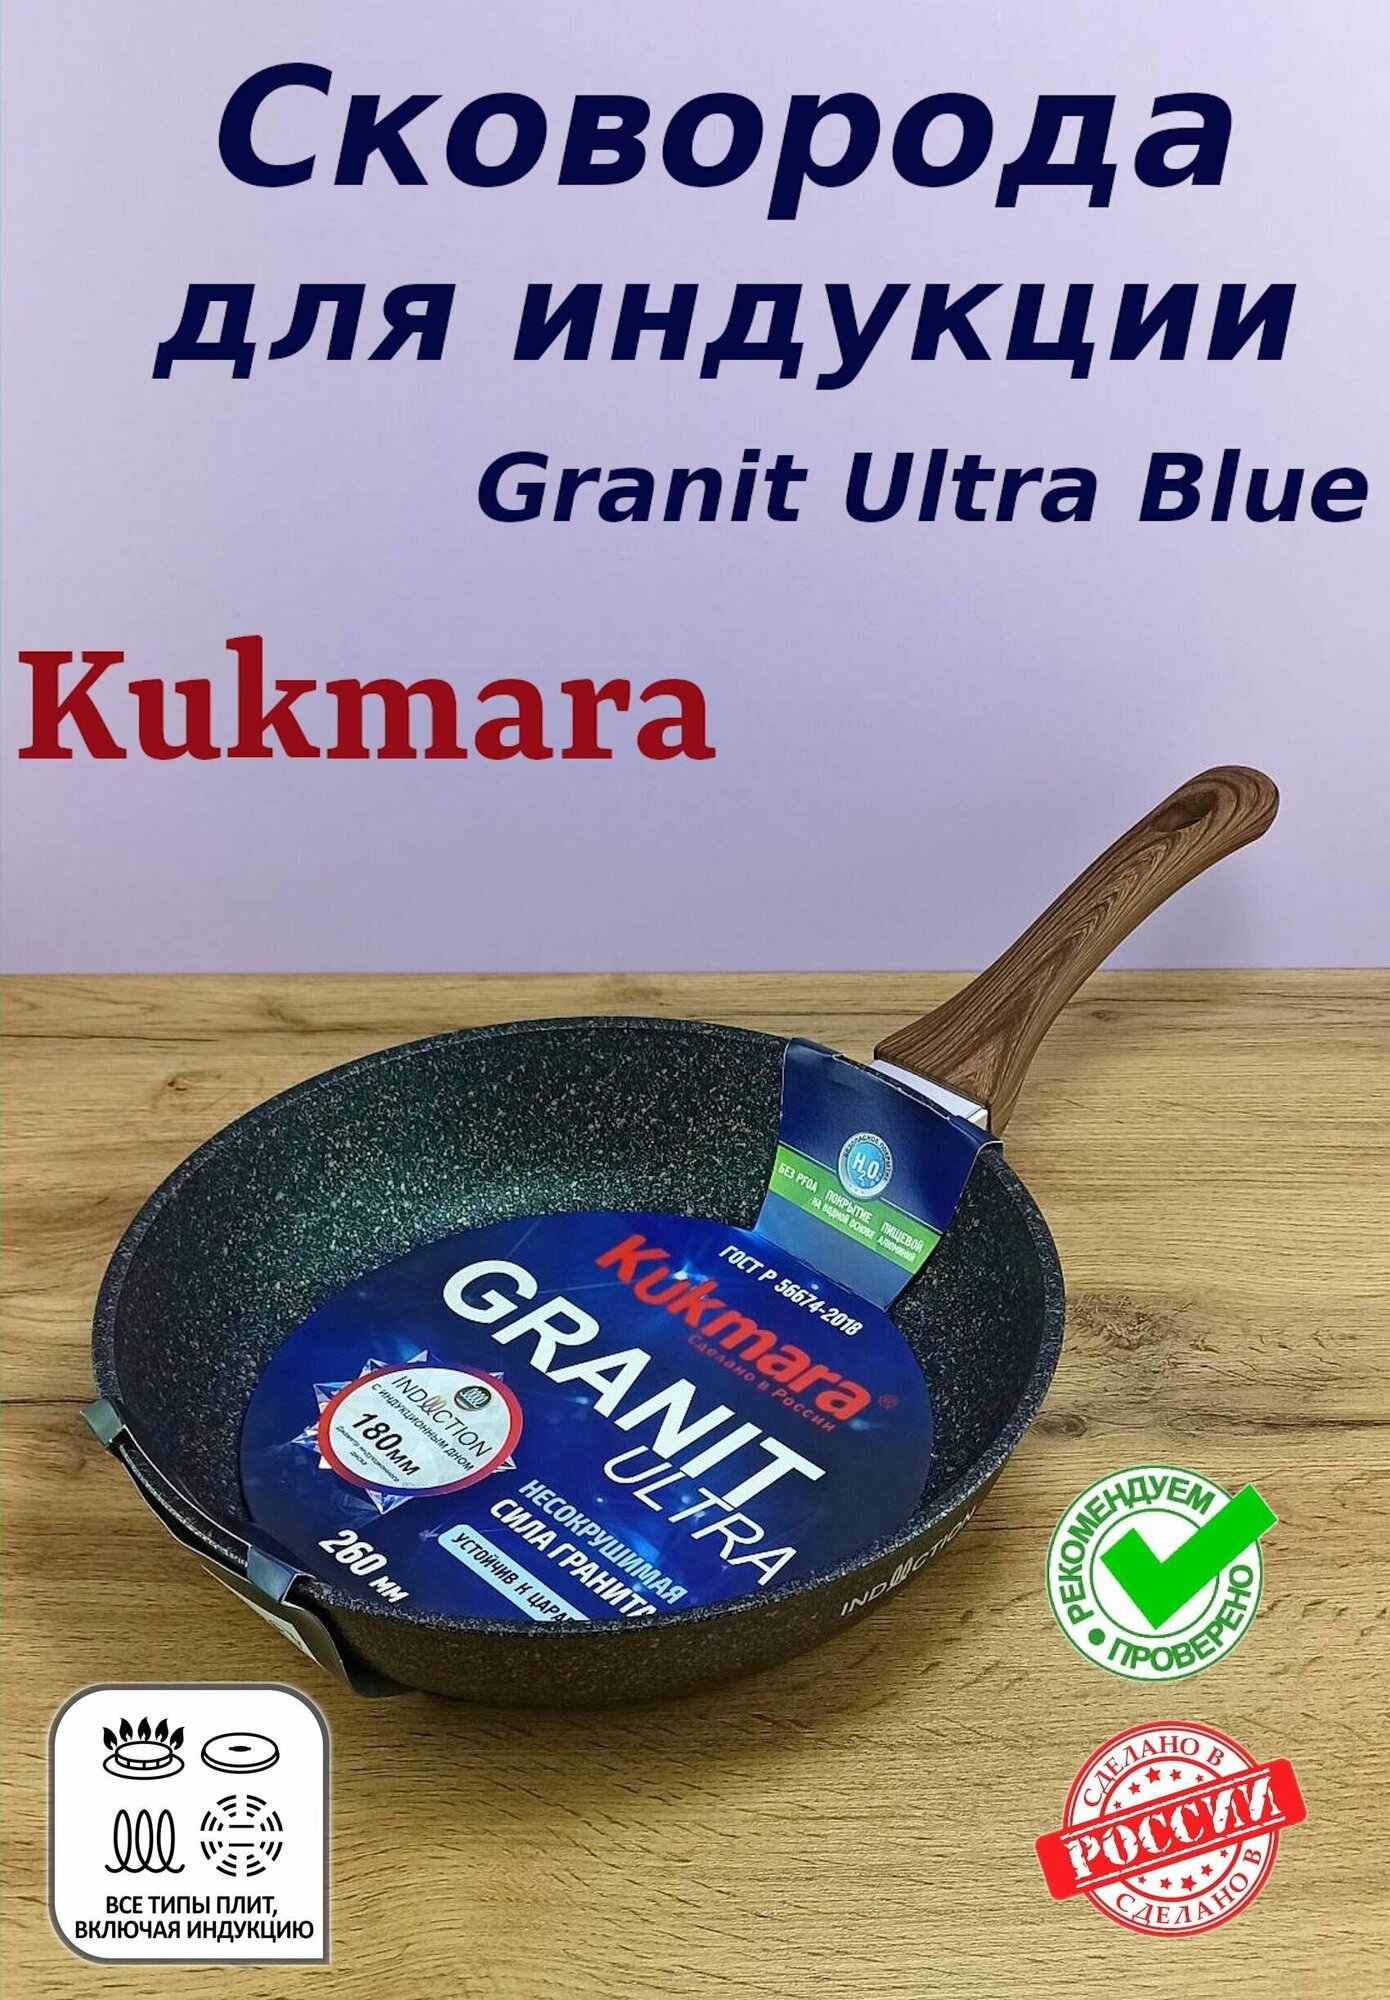 Сковорода для индукции литая АП Granit Ultra blue диаметр 26 см